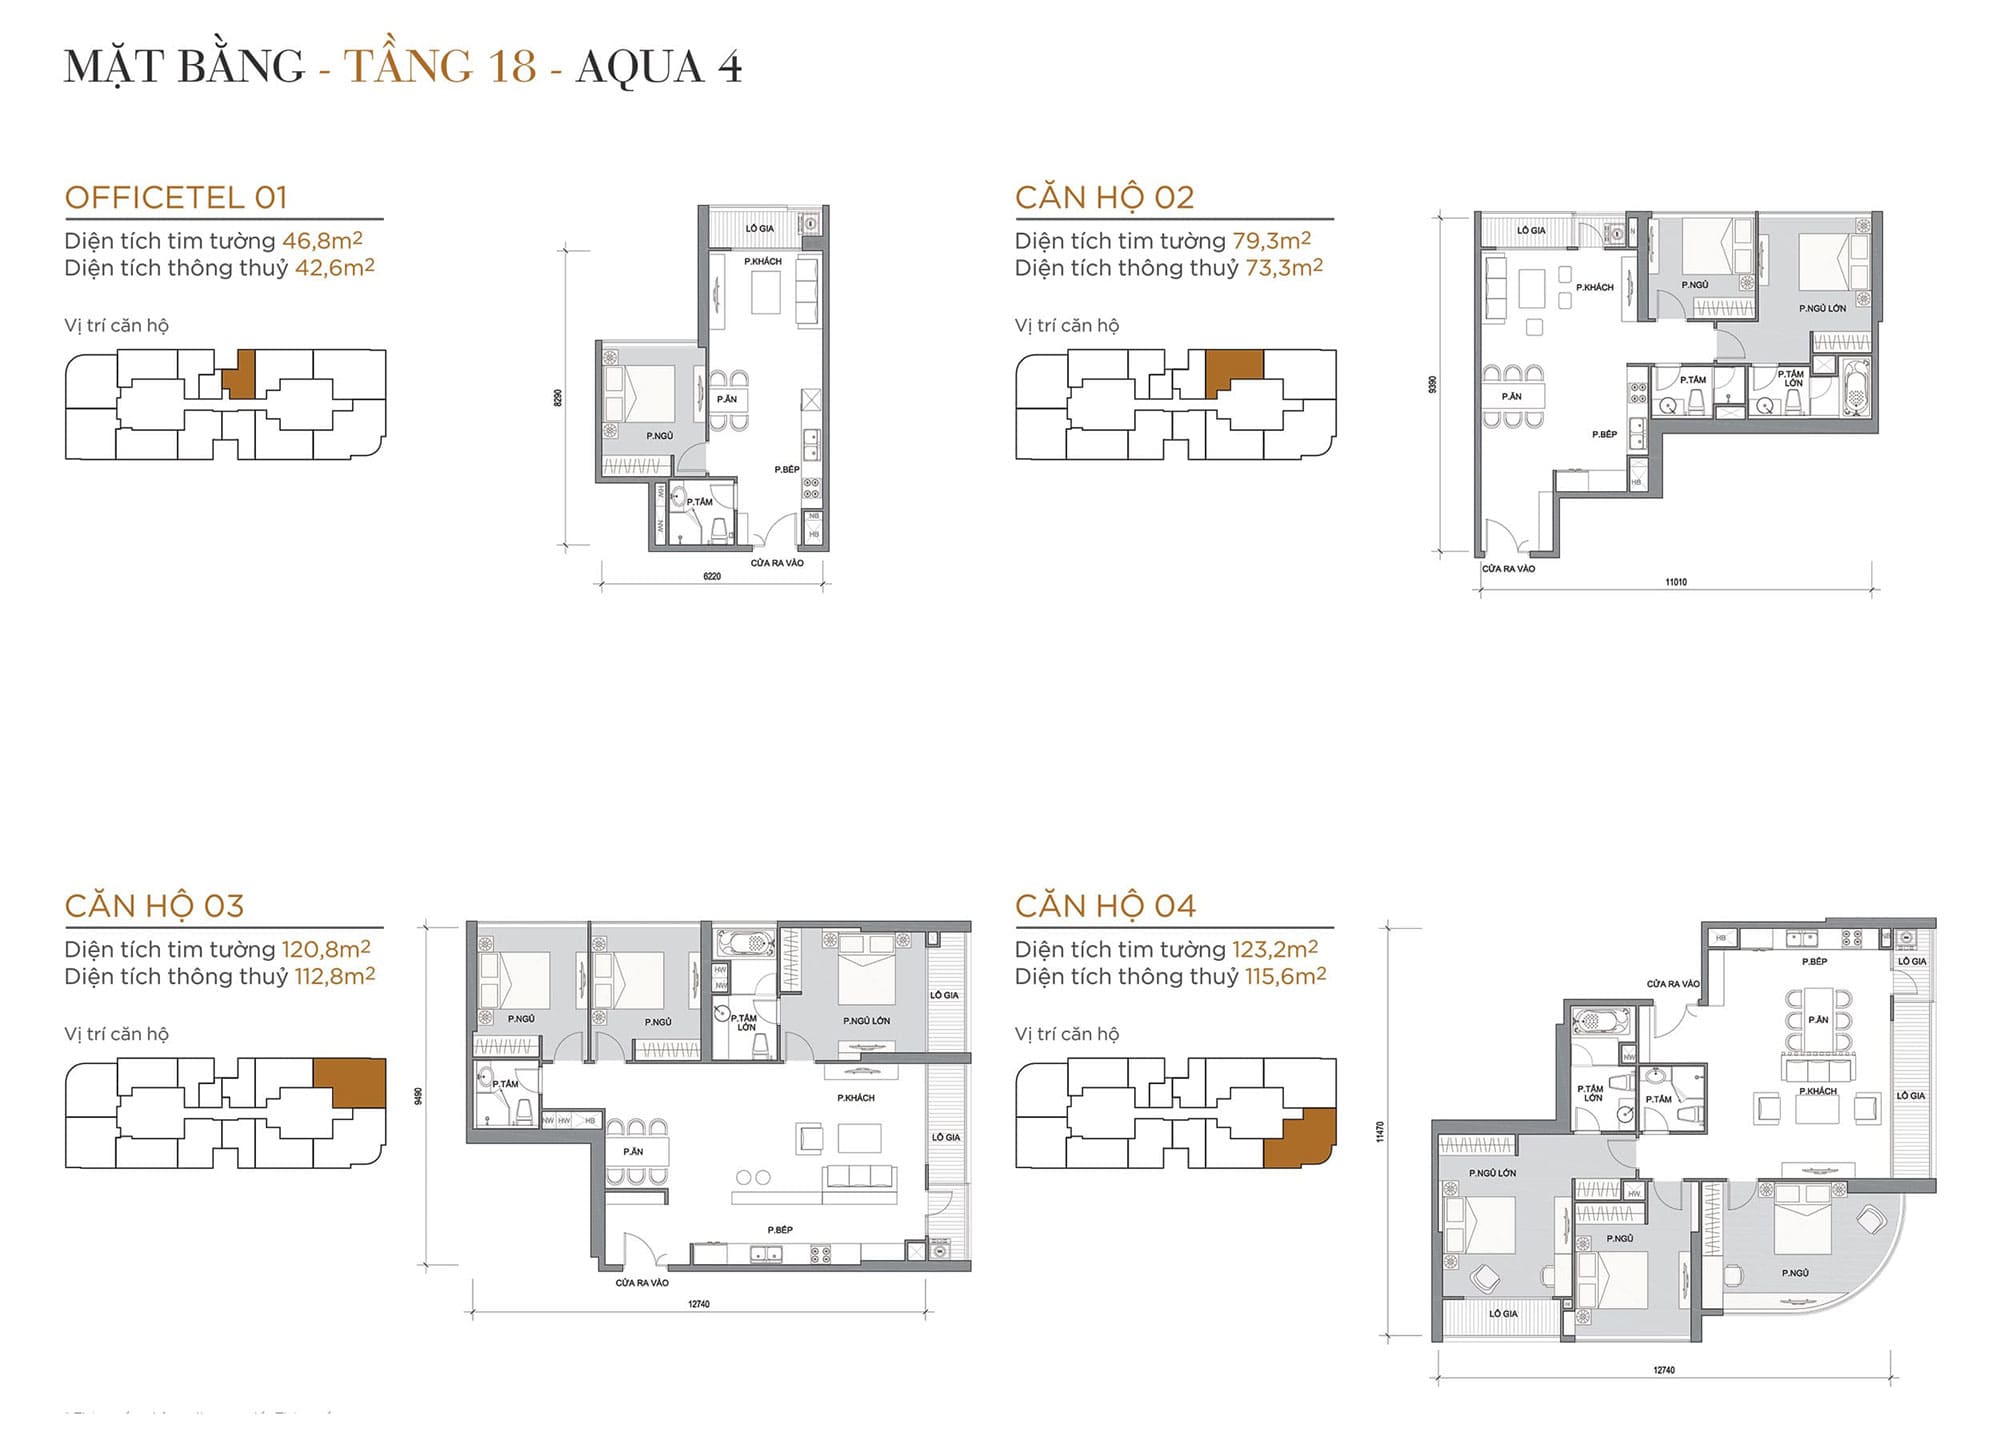 Layout căn hộ tầng 18 tòa Aqua 4 loại Officetel 01, Căn hộ 02, Căn hộ 03, Căn hộ 04.